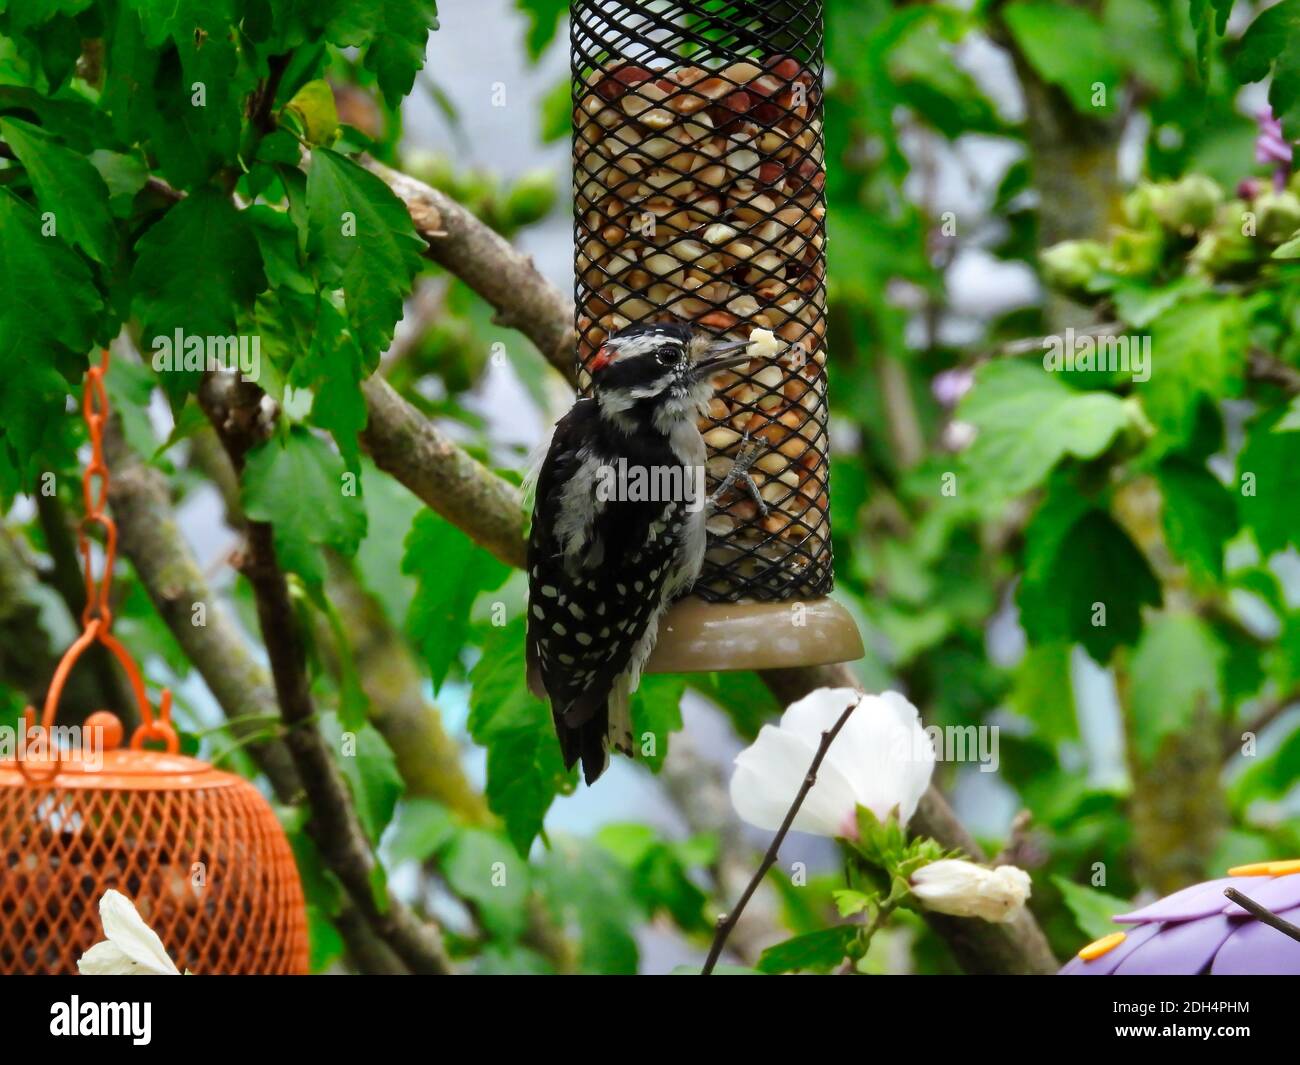 Männlicher Specht-Vogel hängt an einem Erdnussvogel Feeder, da er ein Stück Erdnuss in seinem Schnabel neben anderen Vogelfutterhäuschen, grünen Blättern und Hibiskus hält Stockfoto